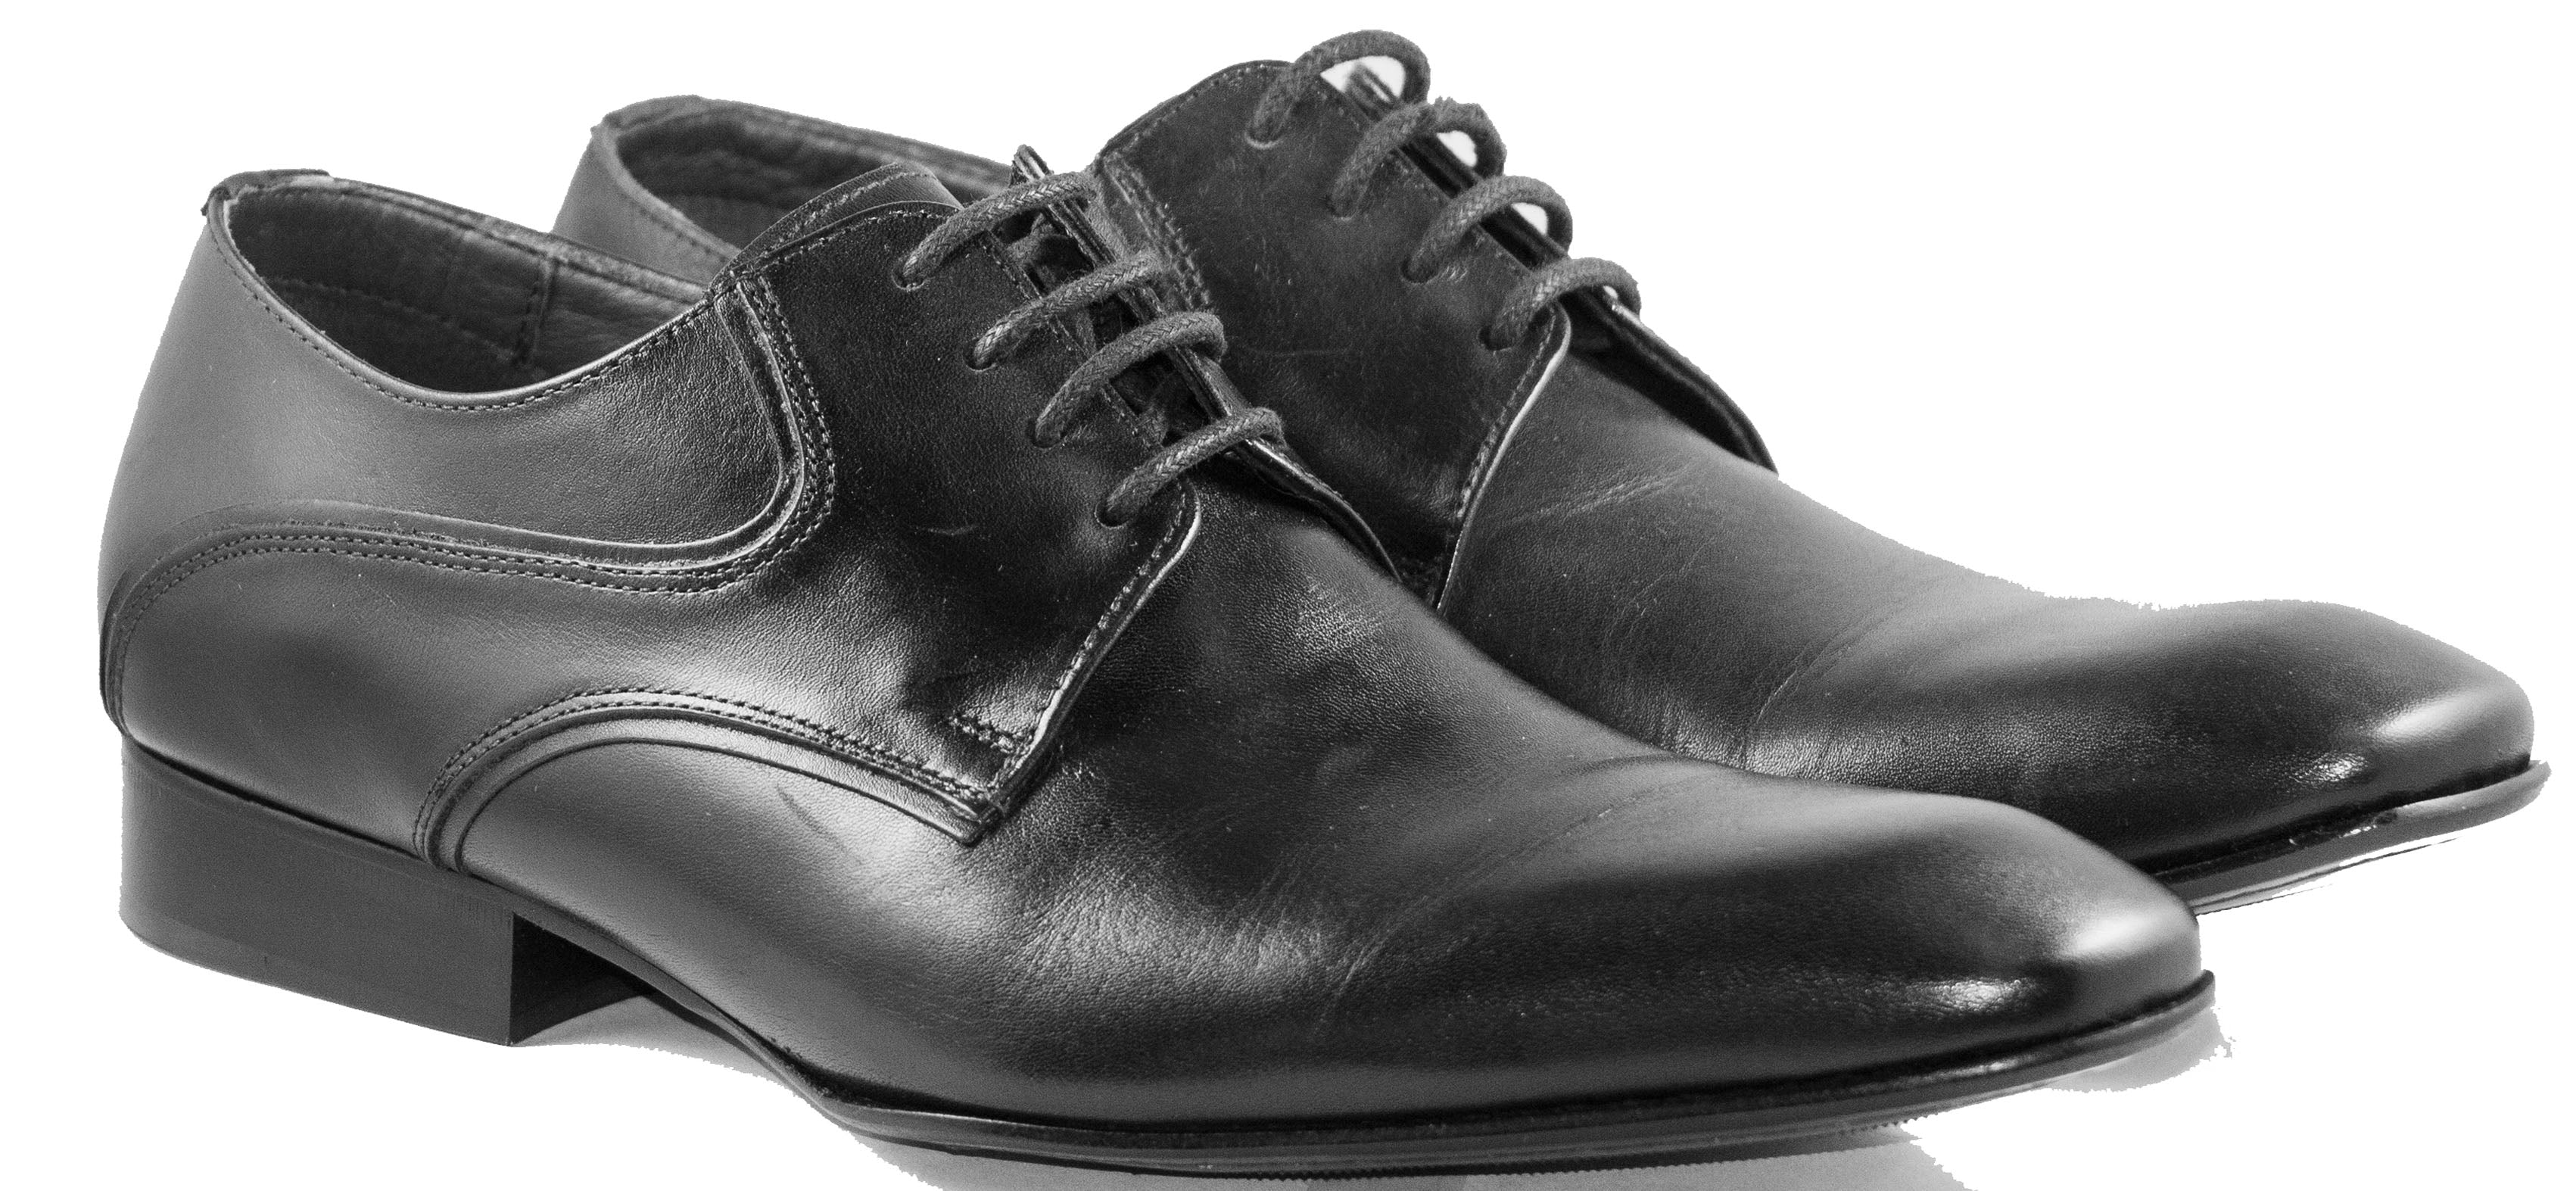 Mario Samello  Men's Black Leather Plain Toe Dress Shoes  Lambri 10